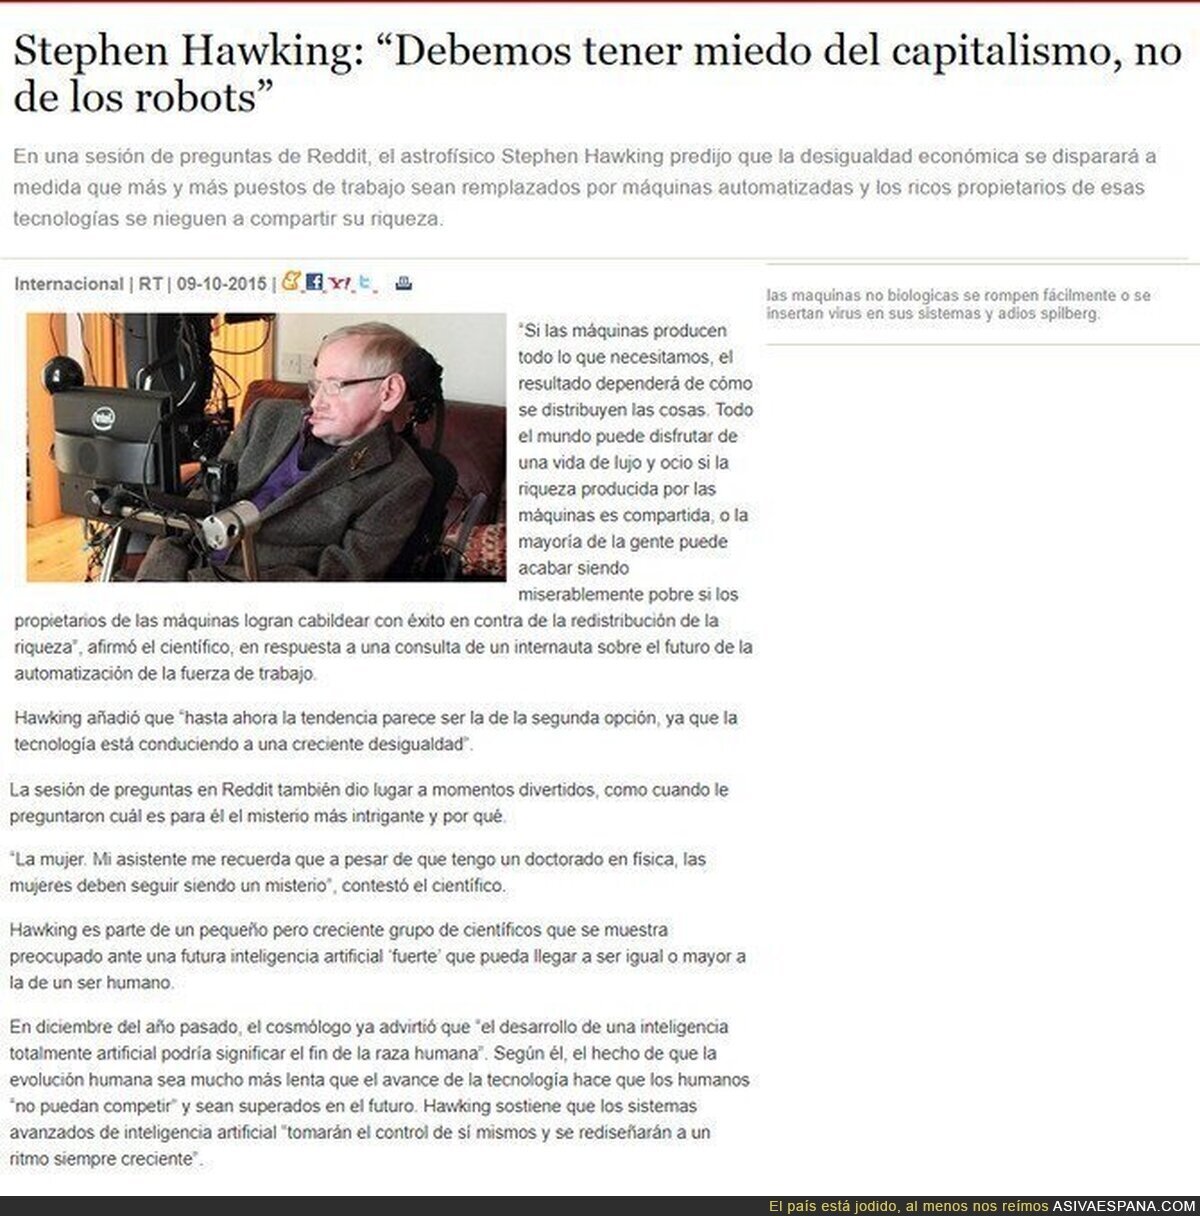 La importante aportación de Stephen Hawking sobre economía y sociedad